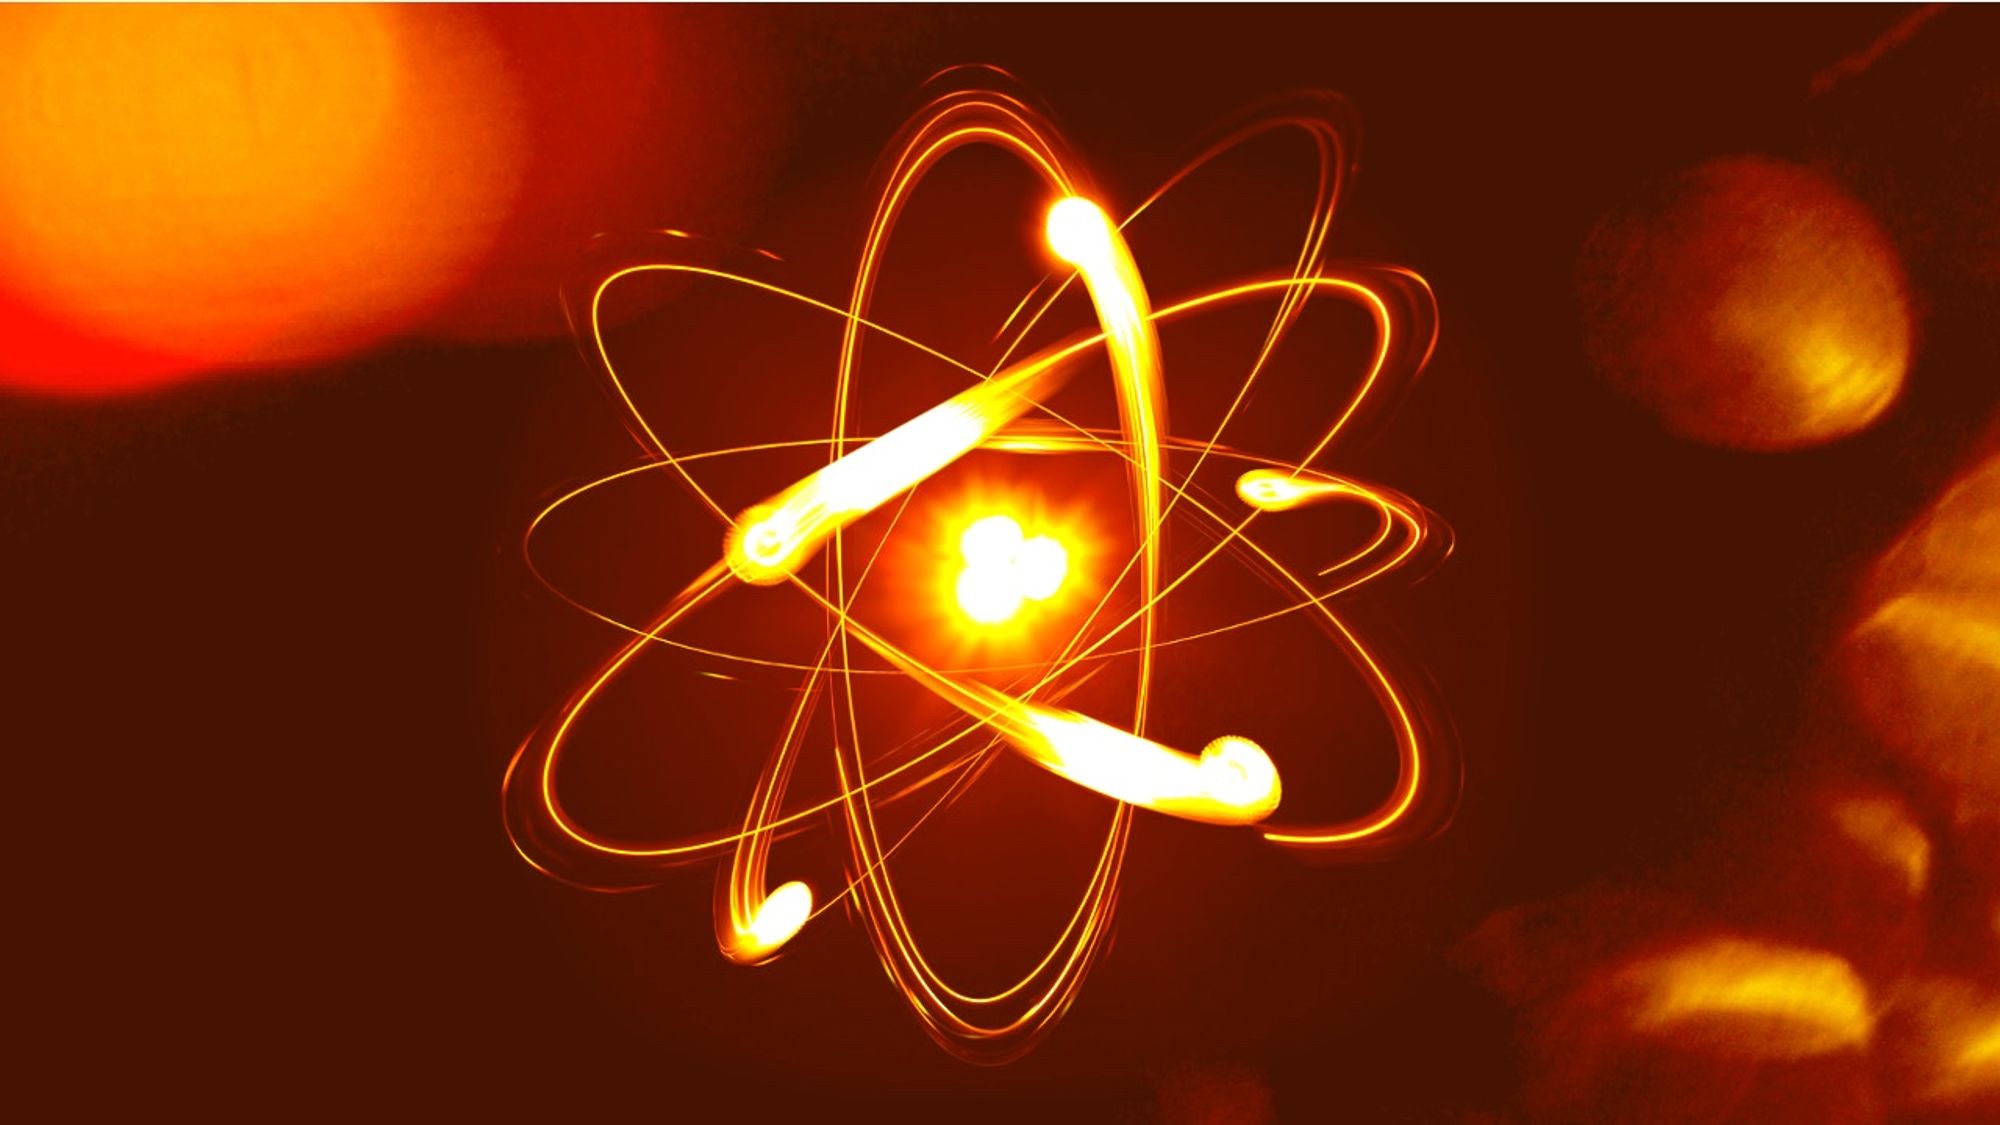 Energie nucléaire, passé ou futur de l'énergie?